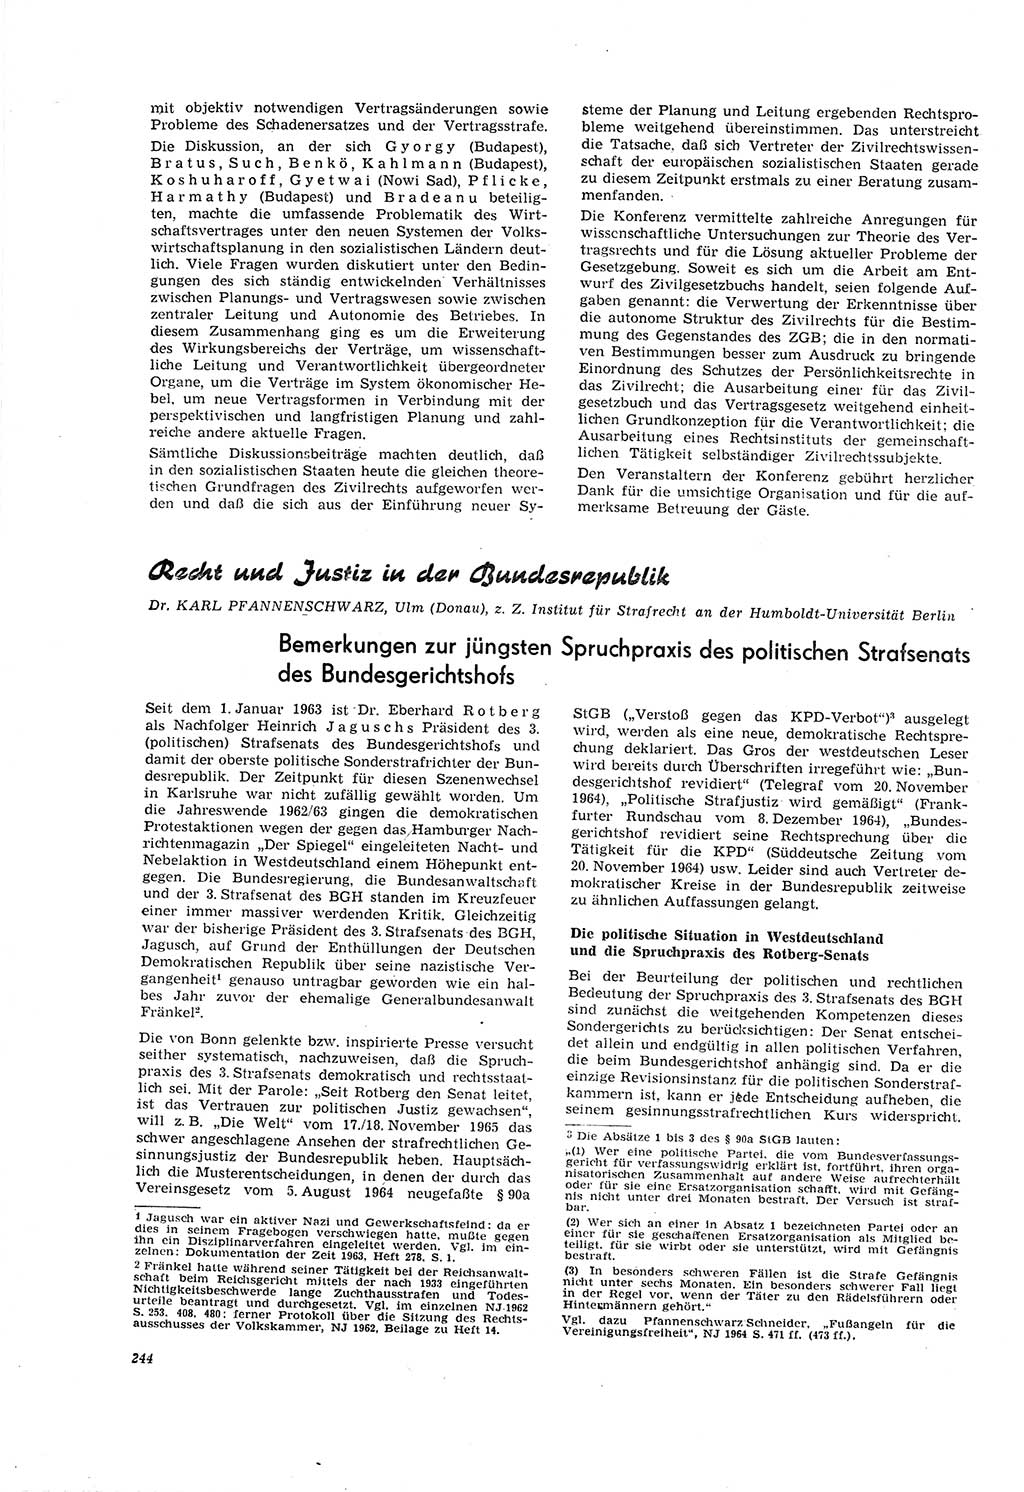 Neue Justiz (NJ), Zeitschrift für Recht und Rechtswissenschaft [Deutsche Demokratische Republik (DDR)], 20. Jahrgang 1966, Seite 244 (NJ DDR 1966, S. 244)